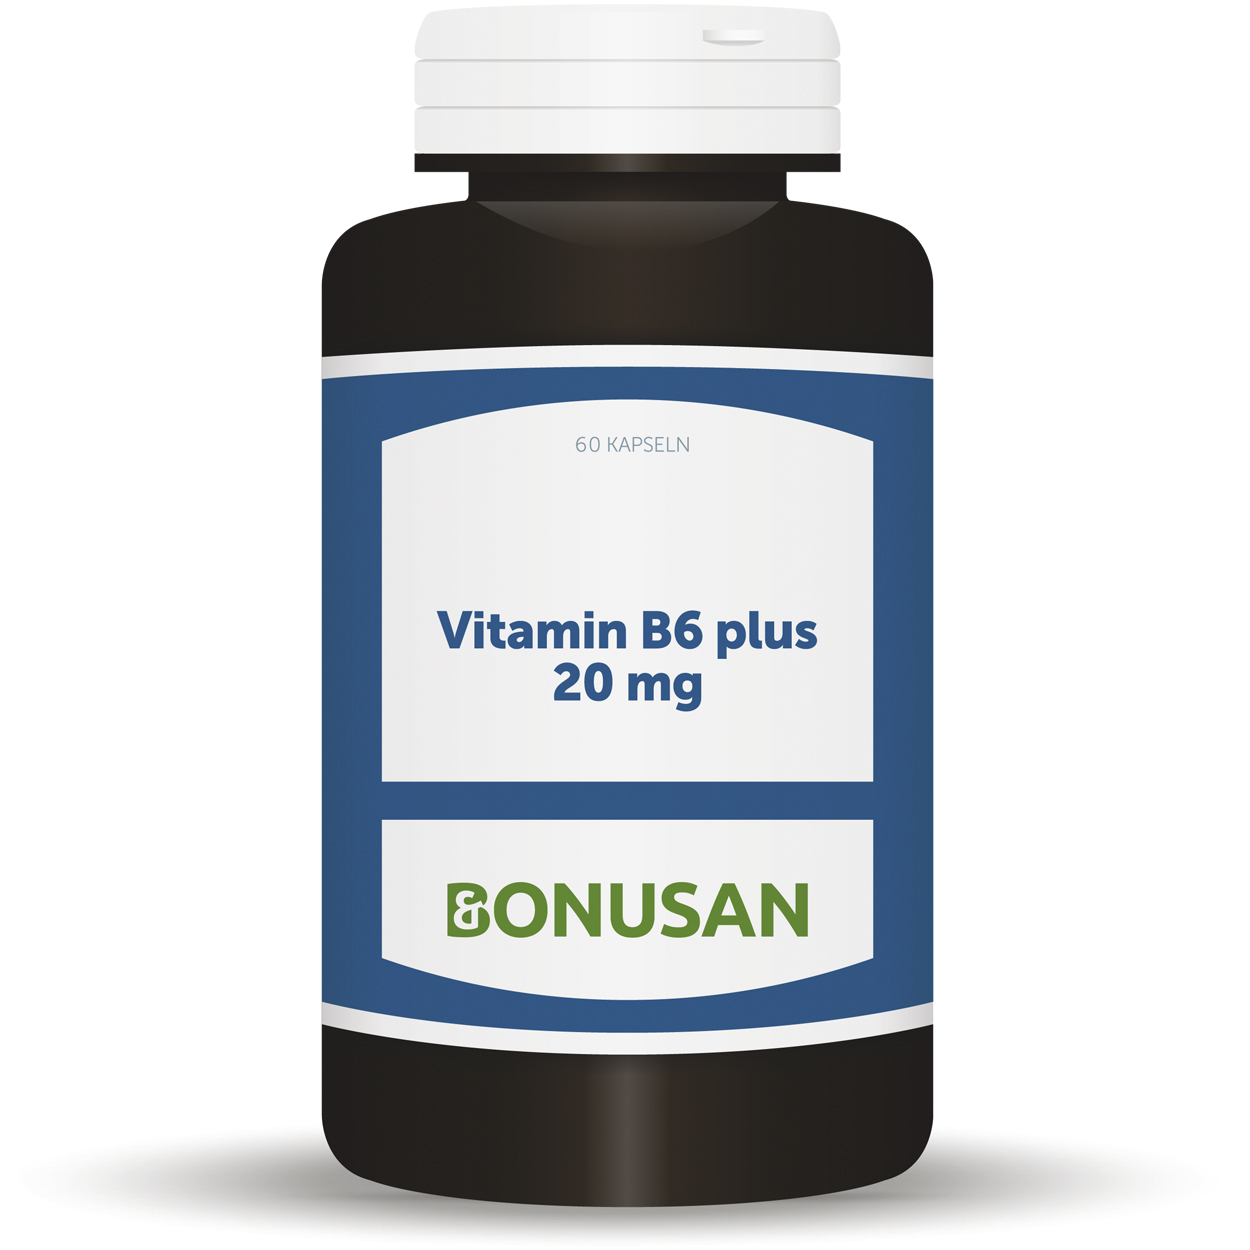 Vitamin B6 plus 20 mg